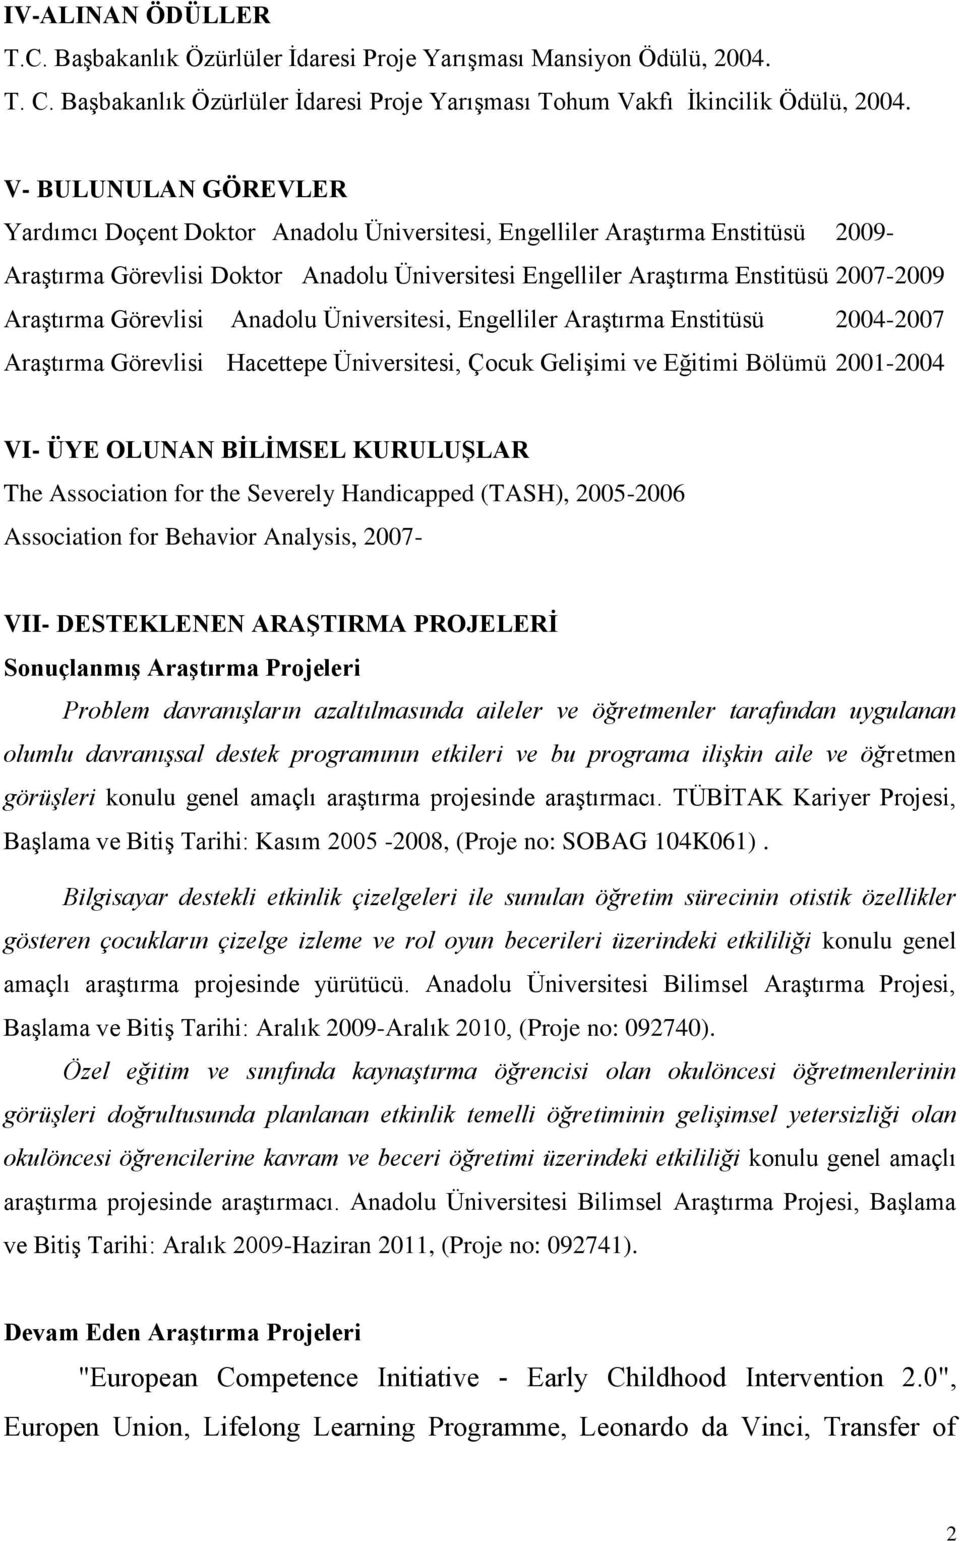 Araştırma Görevlisi Anadolu Üniversitesi, Engelliler Araştırma Enstitüsü 2004-2007 Araştırma Görevlisi Hacettepe Üniversitesi, Çocuk Gelişimi ve Eğitimi Bölümü 2001-2004 VI- ÜYE OLUNAN BİLİMSEL